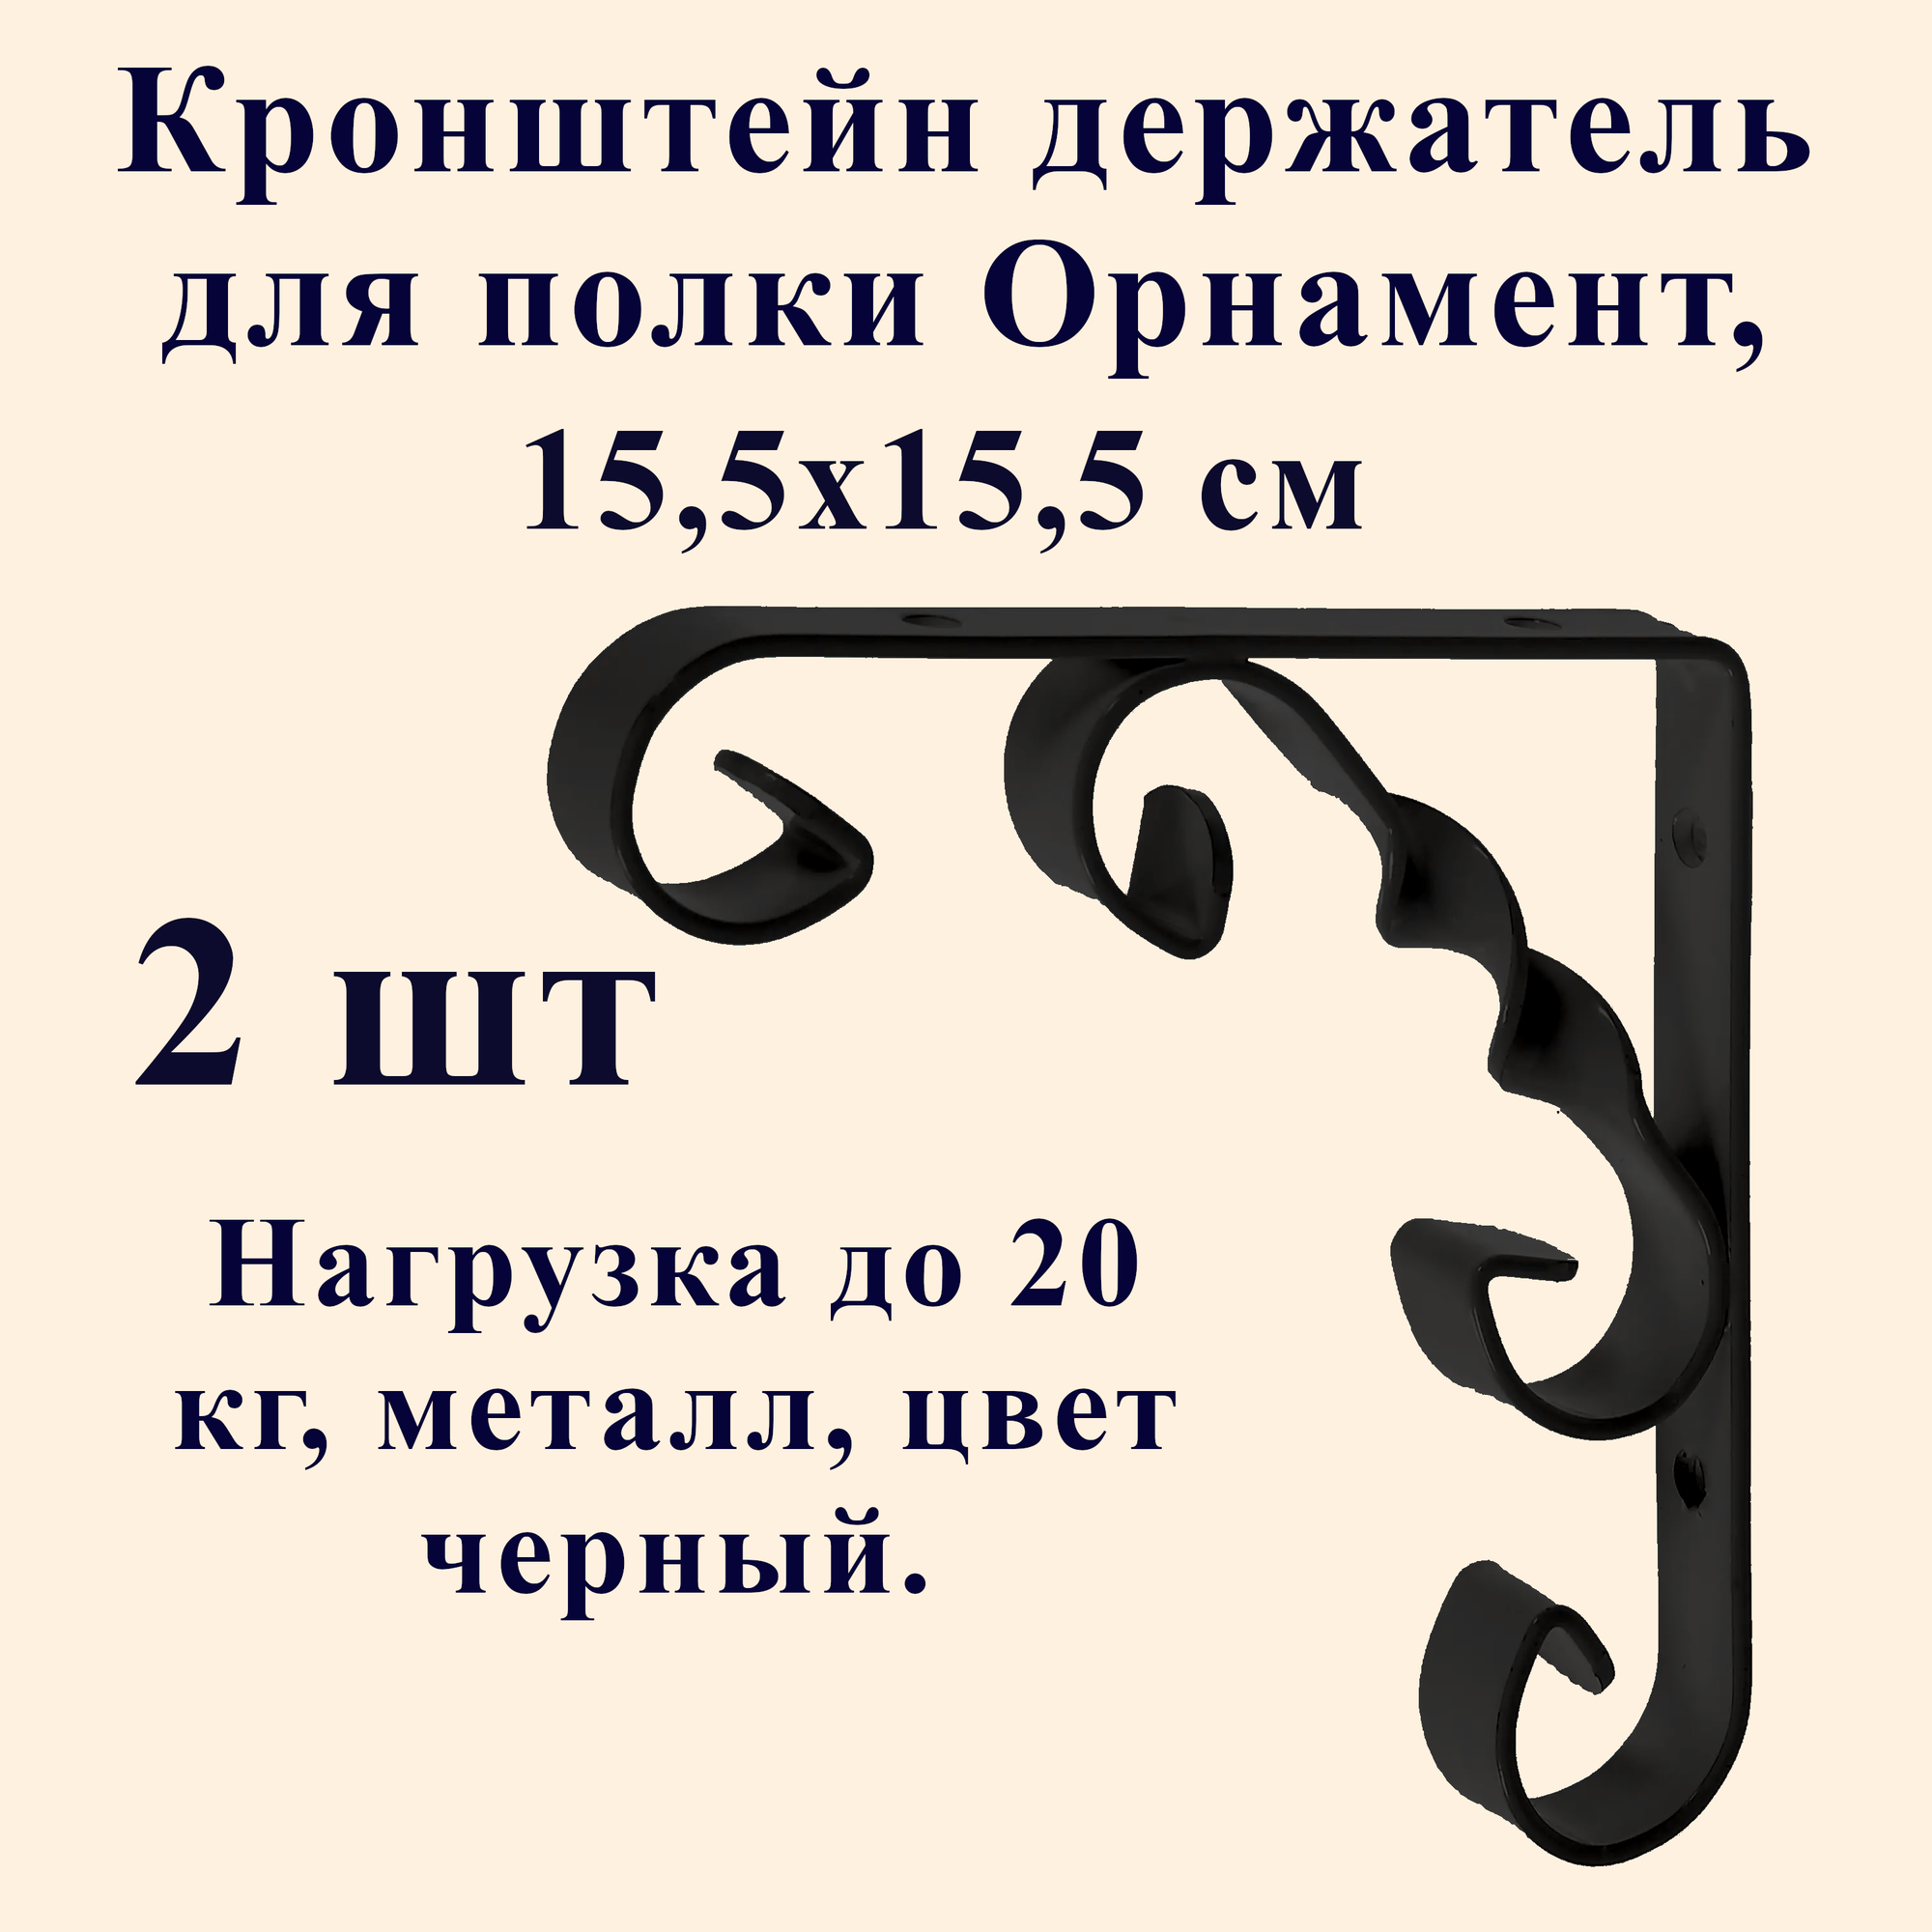 Кронштейн держатель для полки, Орнамент, металлический, 15,5х15,5 см, черный, 2 шт.